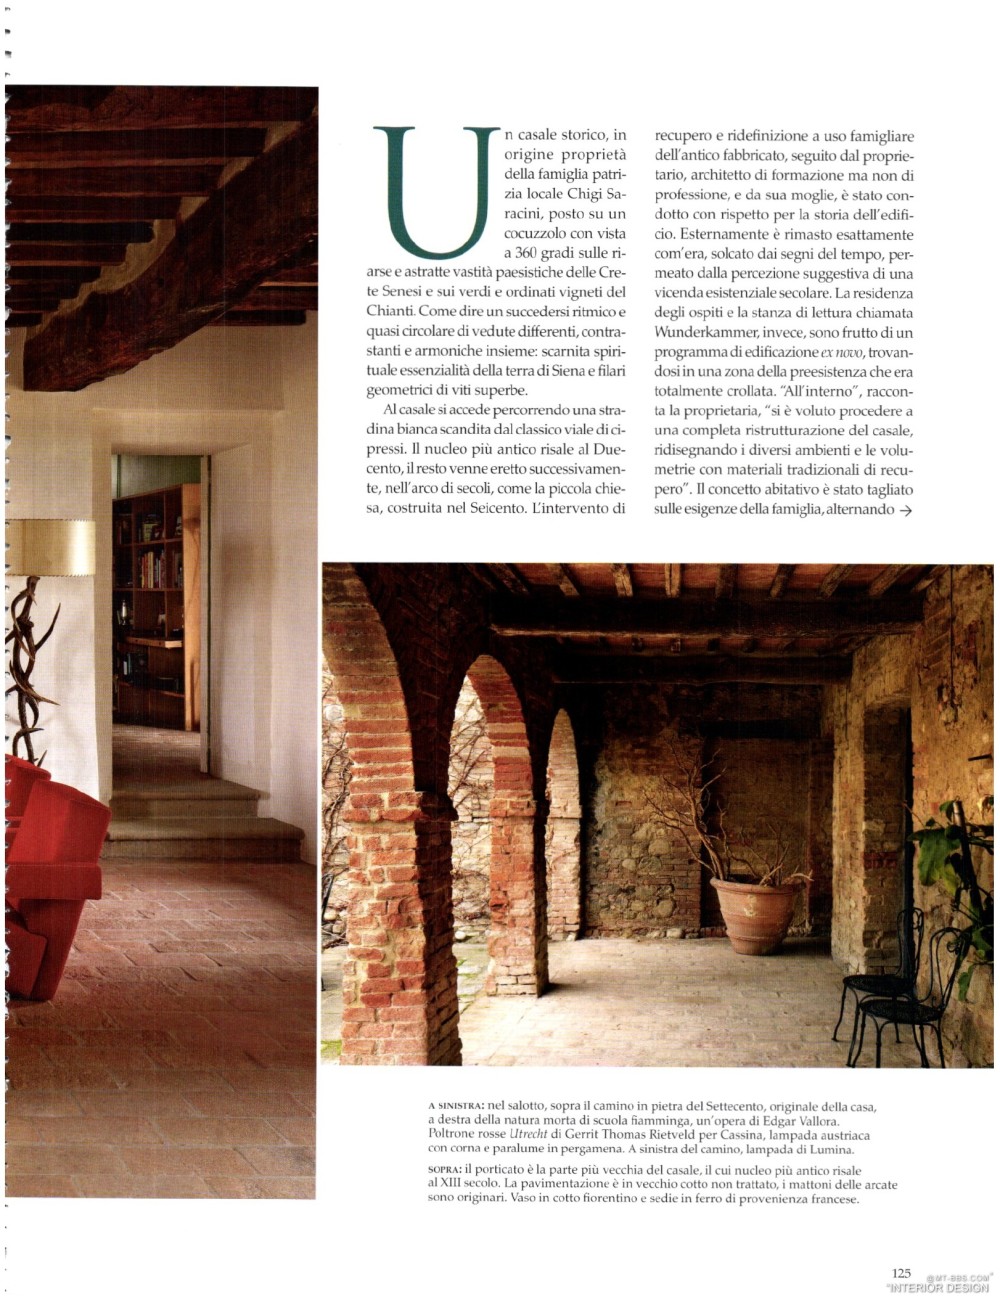 意大利AD 杂志 2012年全年JPG高清版本 全免（上传完毕）_0127.jpg